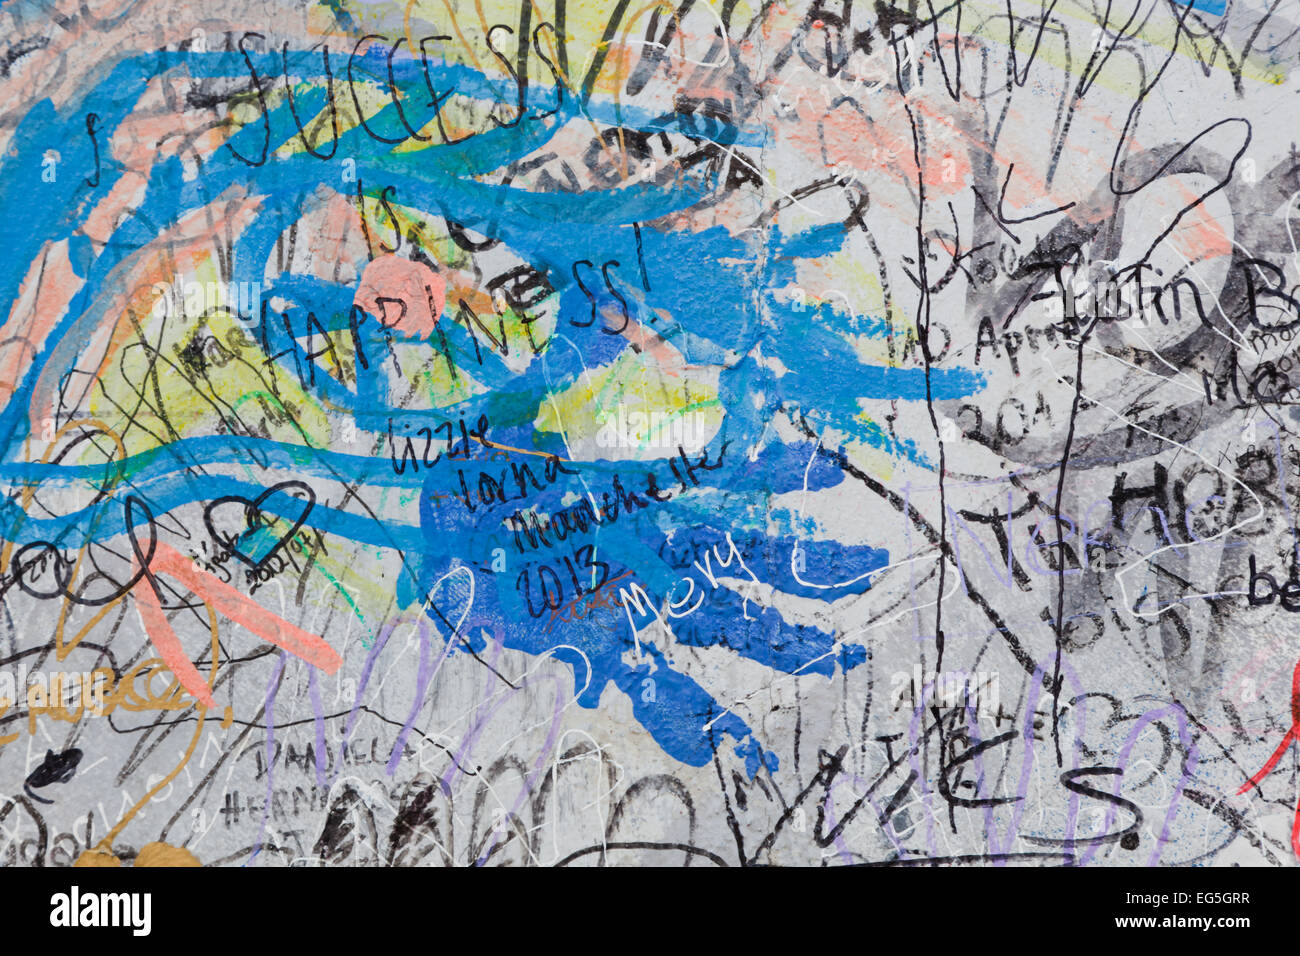 BERLIN, Juli 26: Graffiti an der East Side Gallery am 26. Juli 2013 in Berlin, Deutschland. Es dokumentiert eine Zeit des Wandels und hofft f Stockfoto